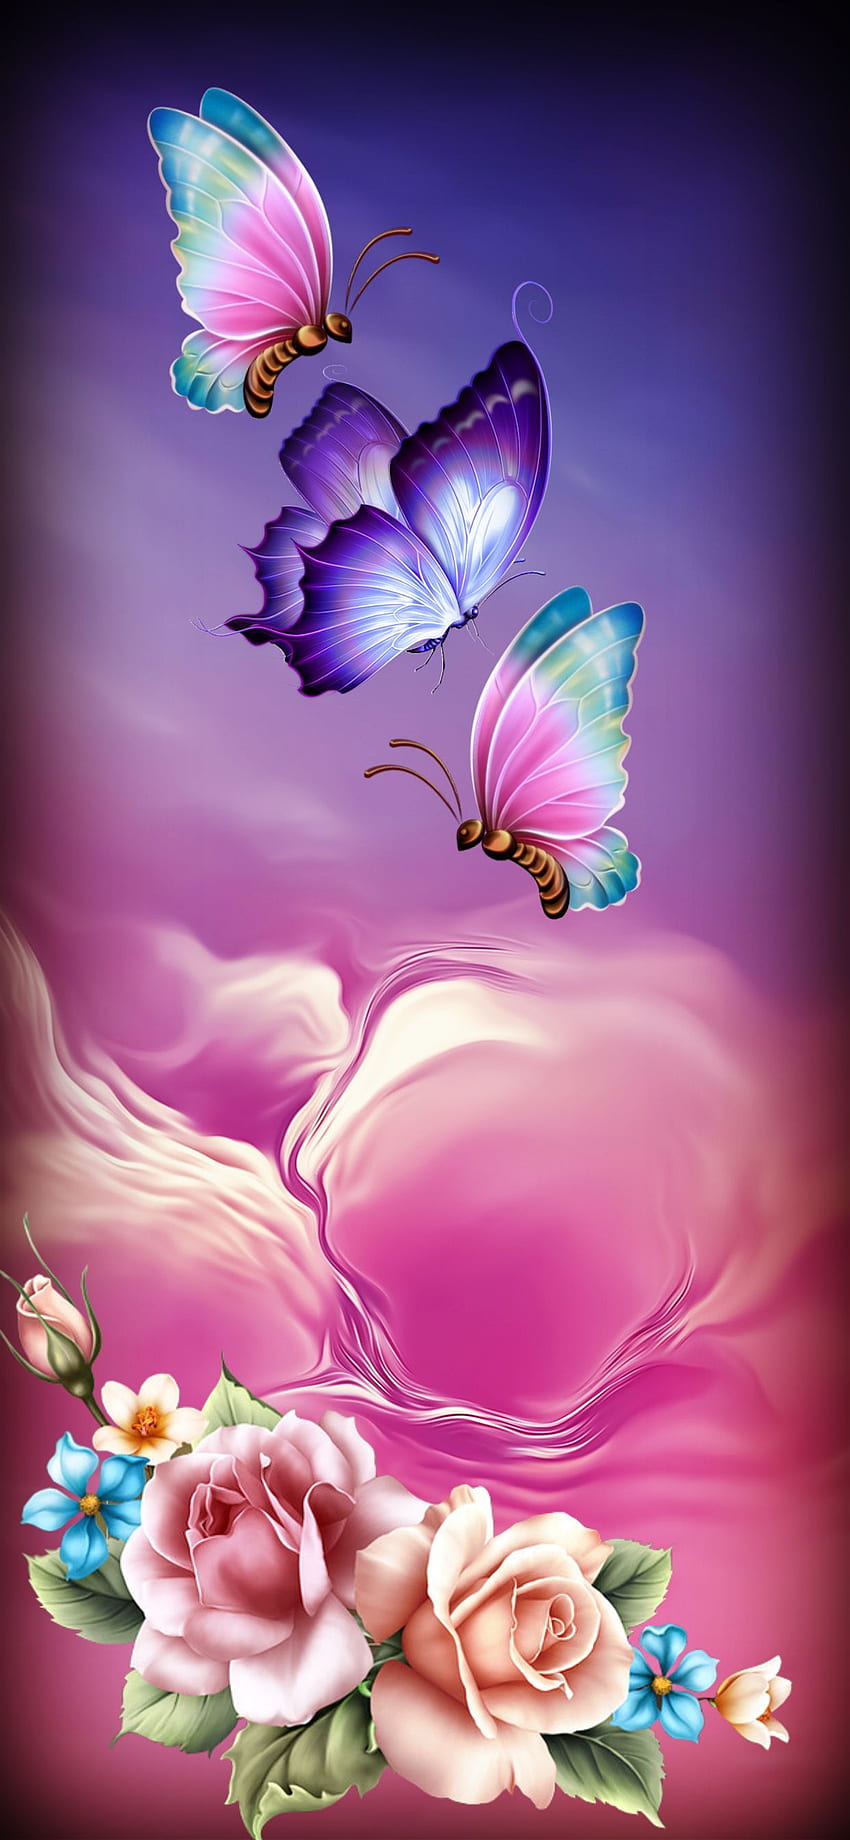 Rosas y mariposas. Mariposa, teléfono de flores, de mariposa, flores brillantes y mariposas fondo de pantalla del teléfono